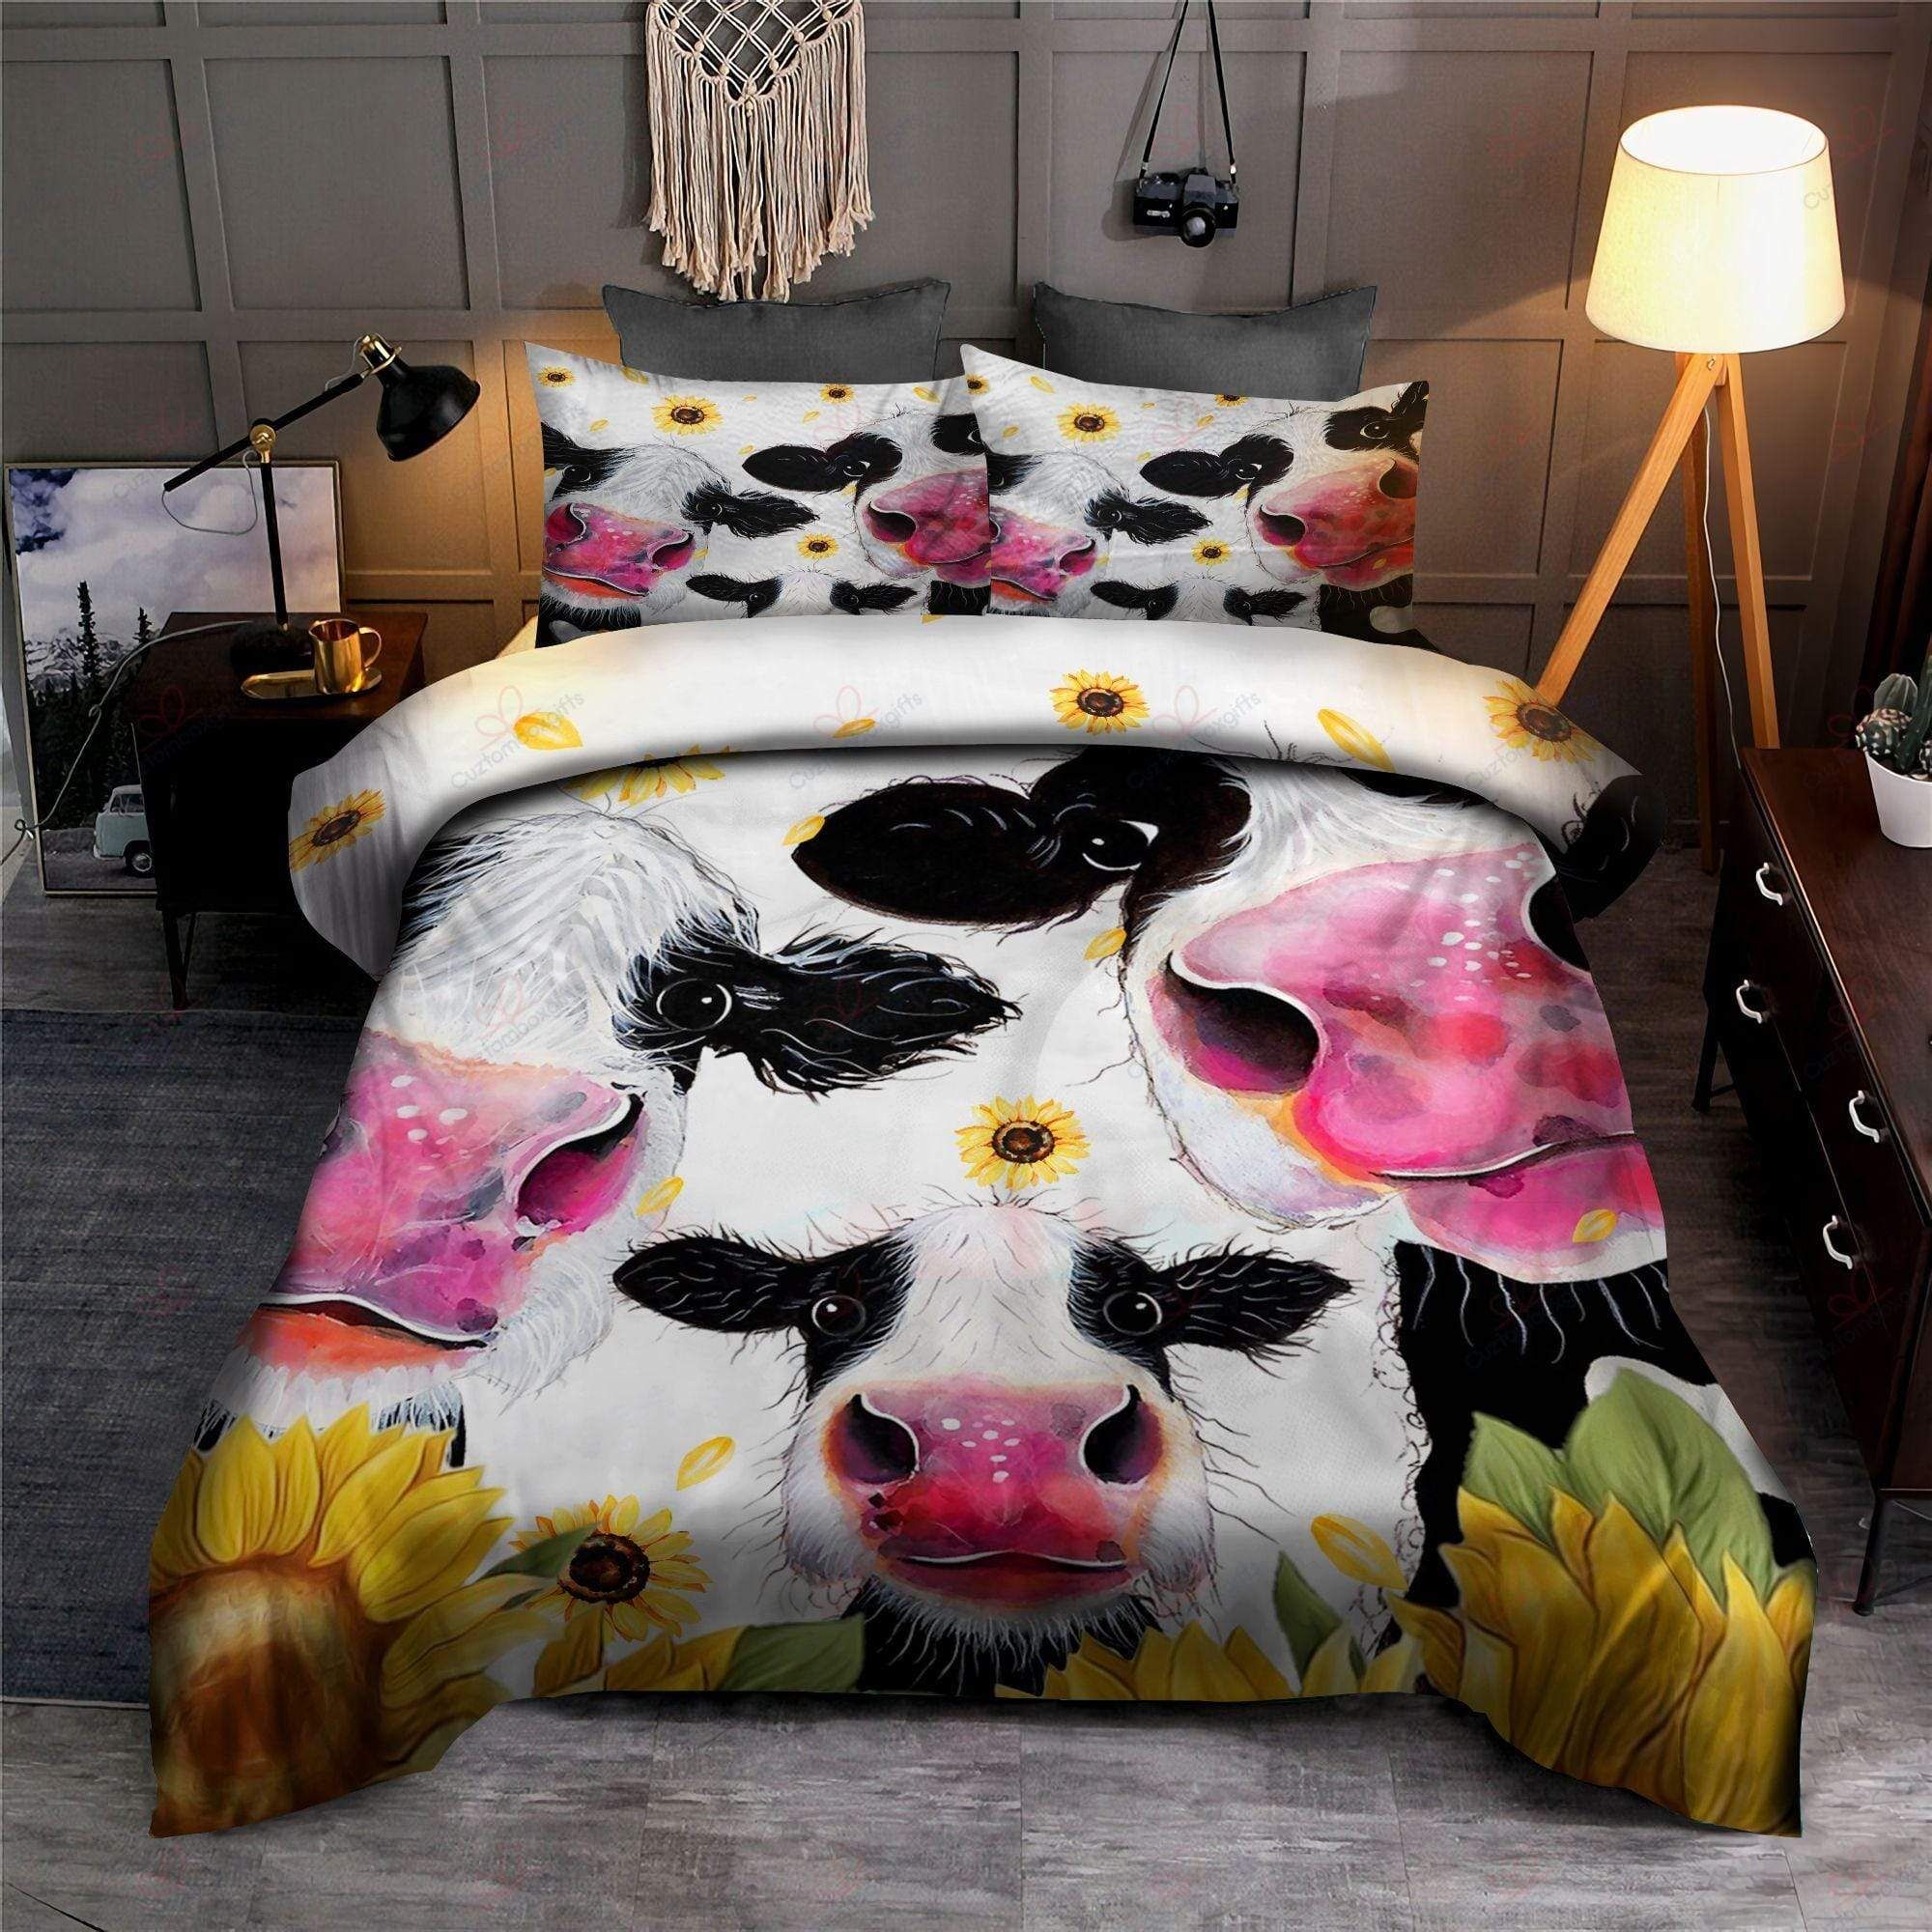 Family Cow Sunflower Duvet Cover Bedding Set